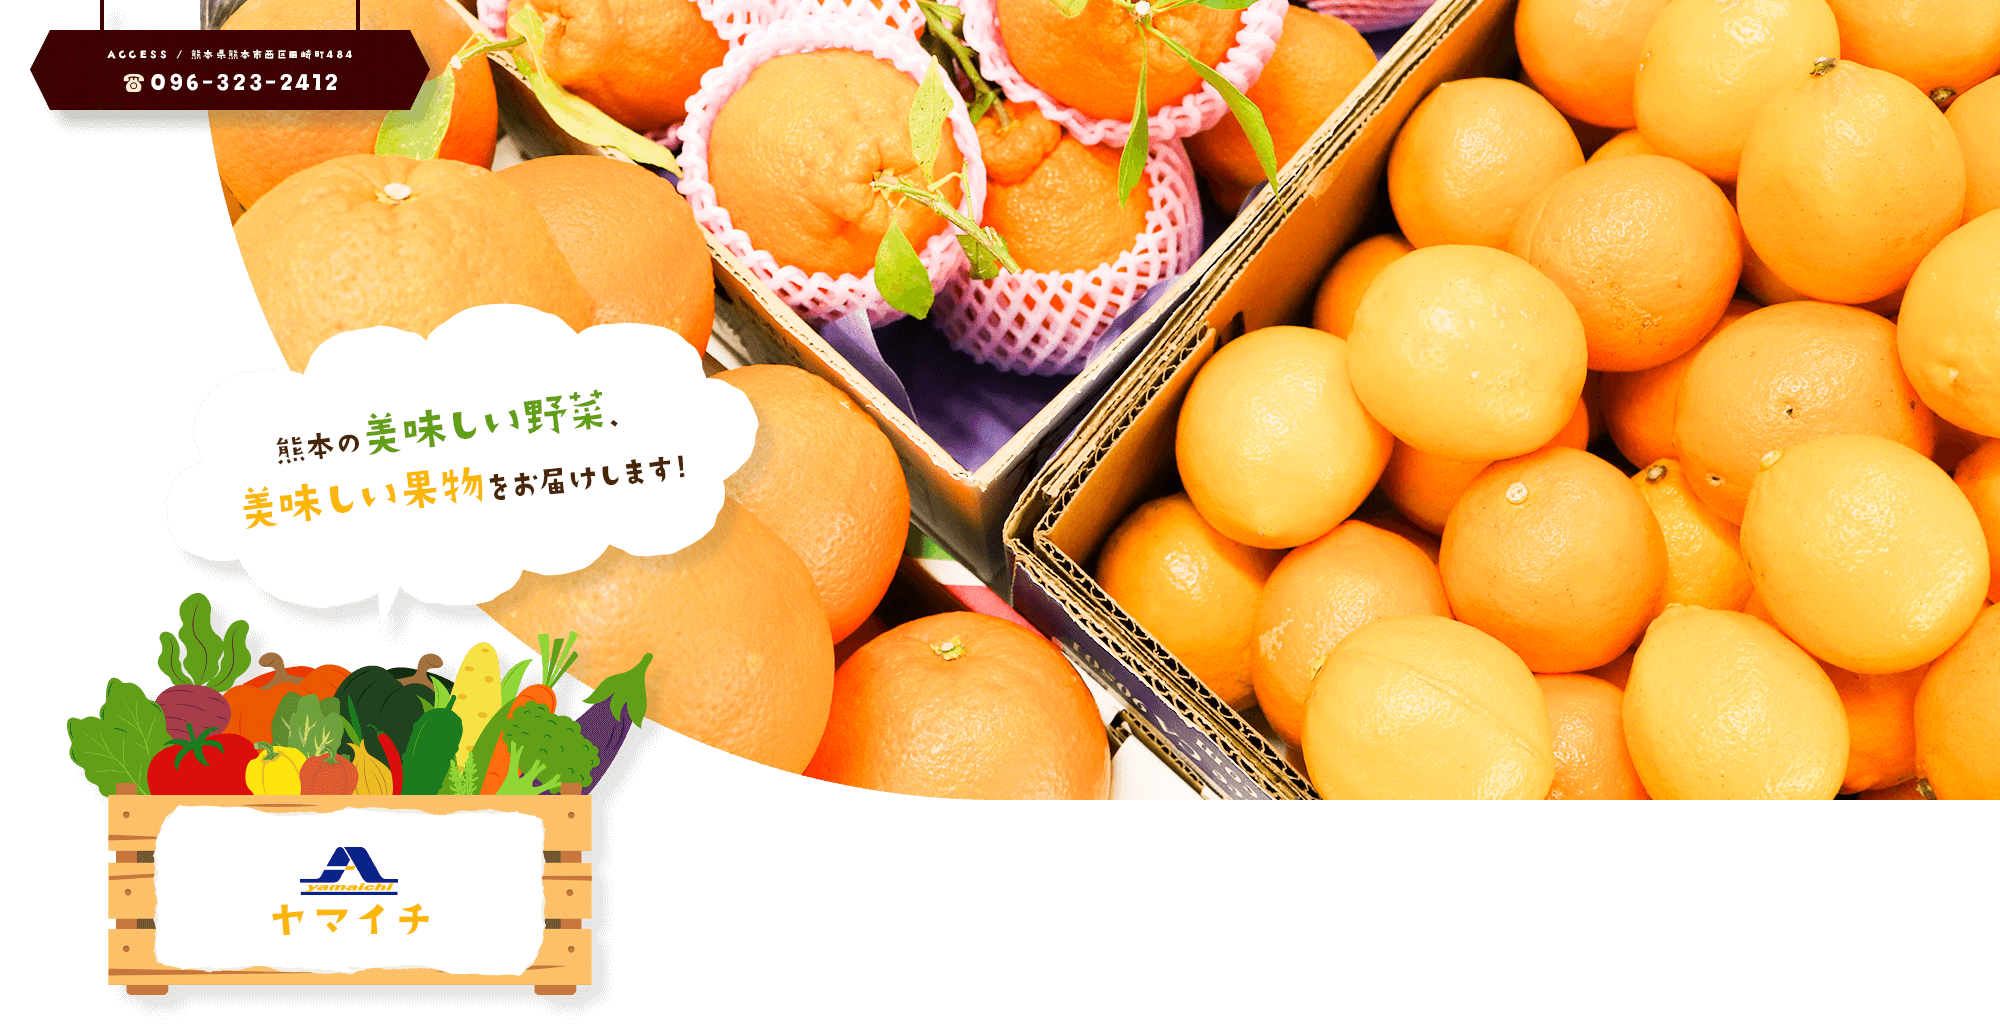 熊本の美味しい野菜、美味しい果物をお届けします